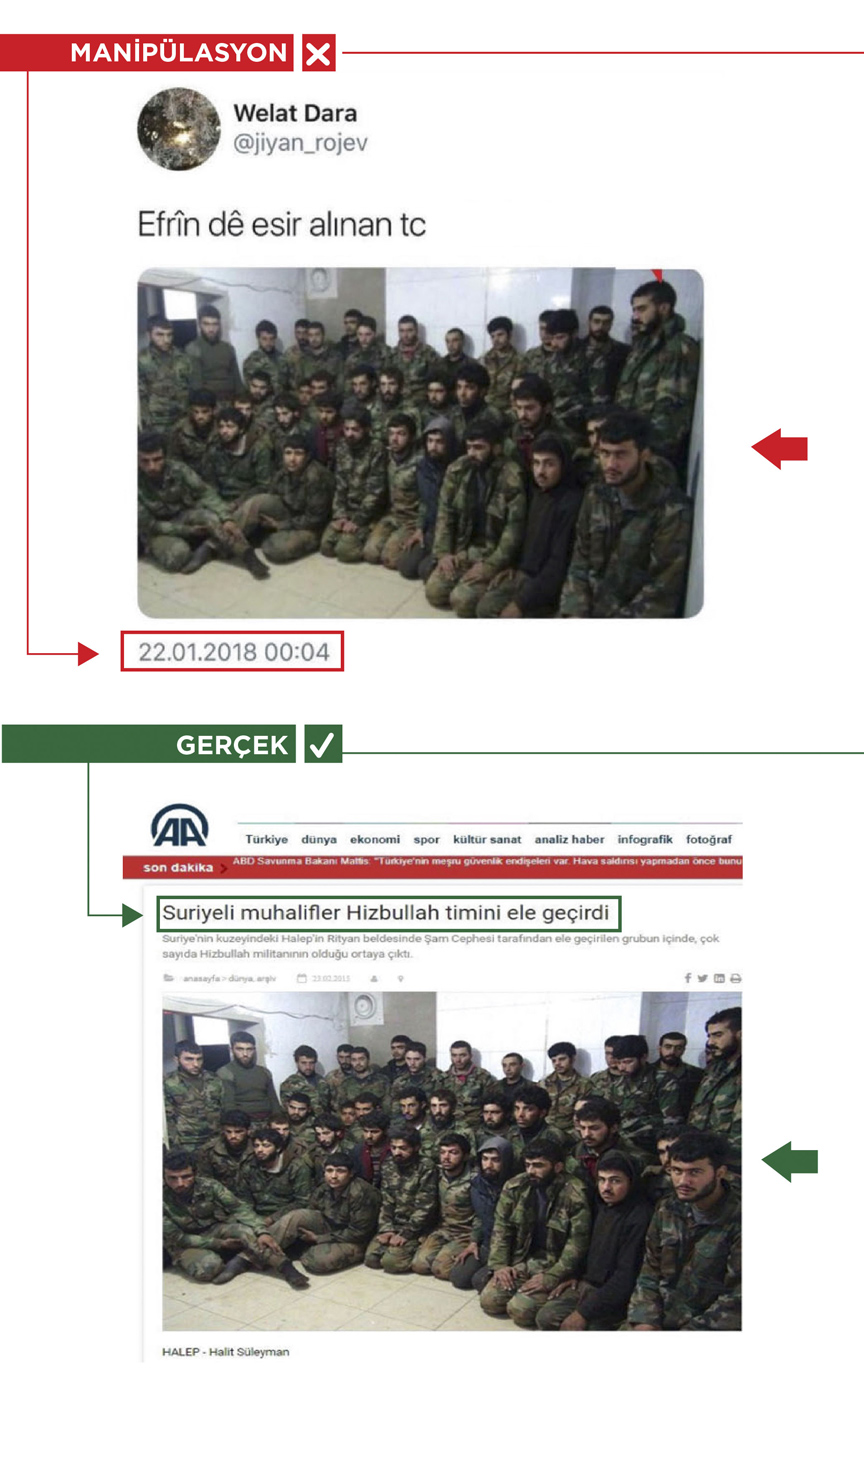 Terör örgütü PKK'nın sosyal medya yalanları: 4 fotoğraf 4 gerçek